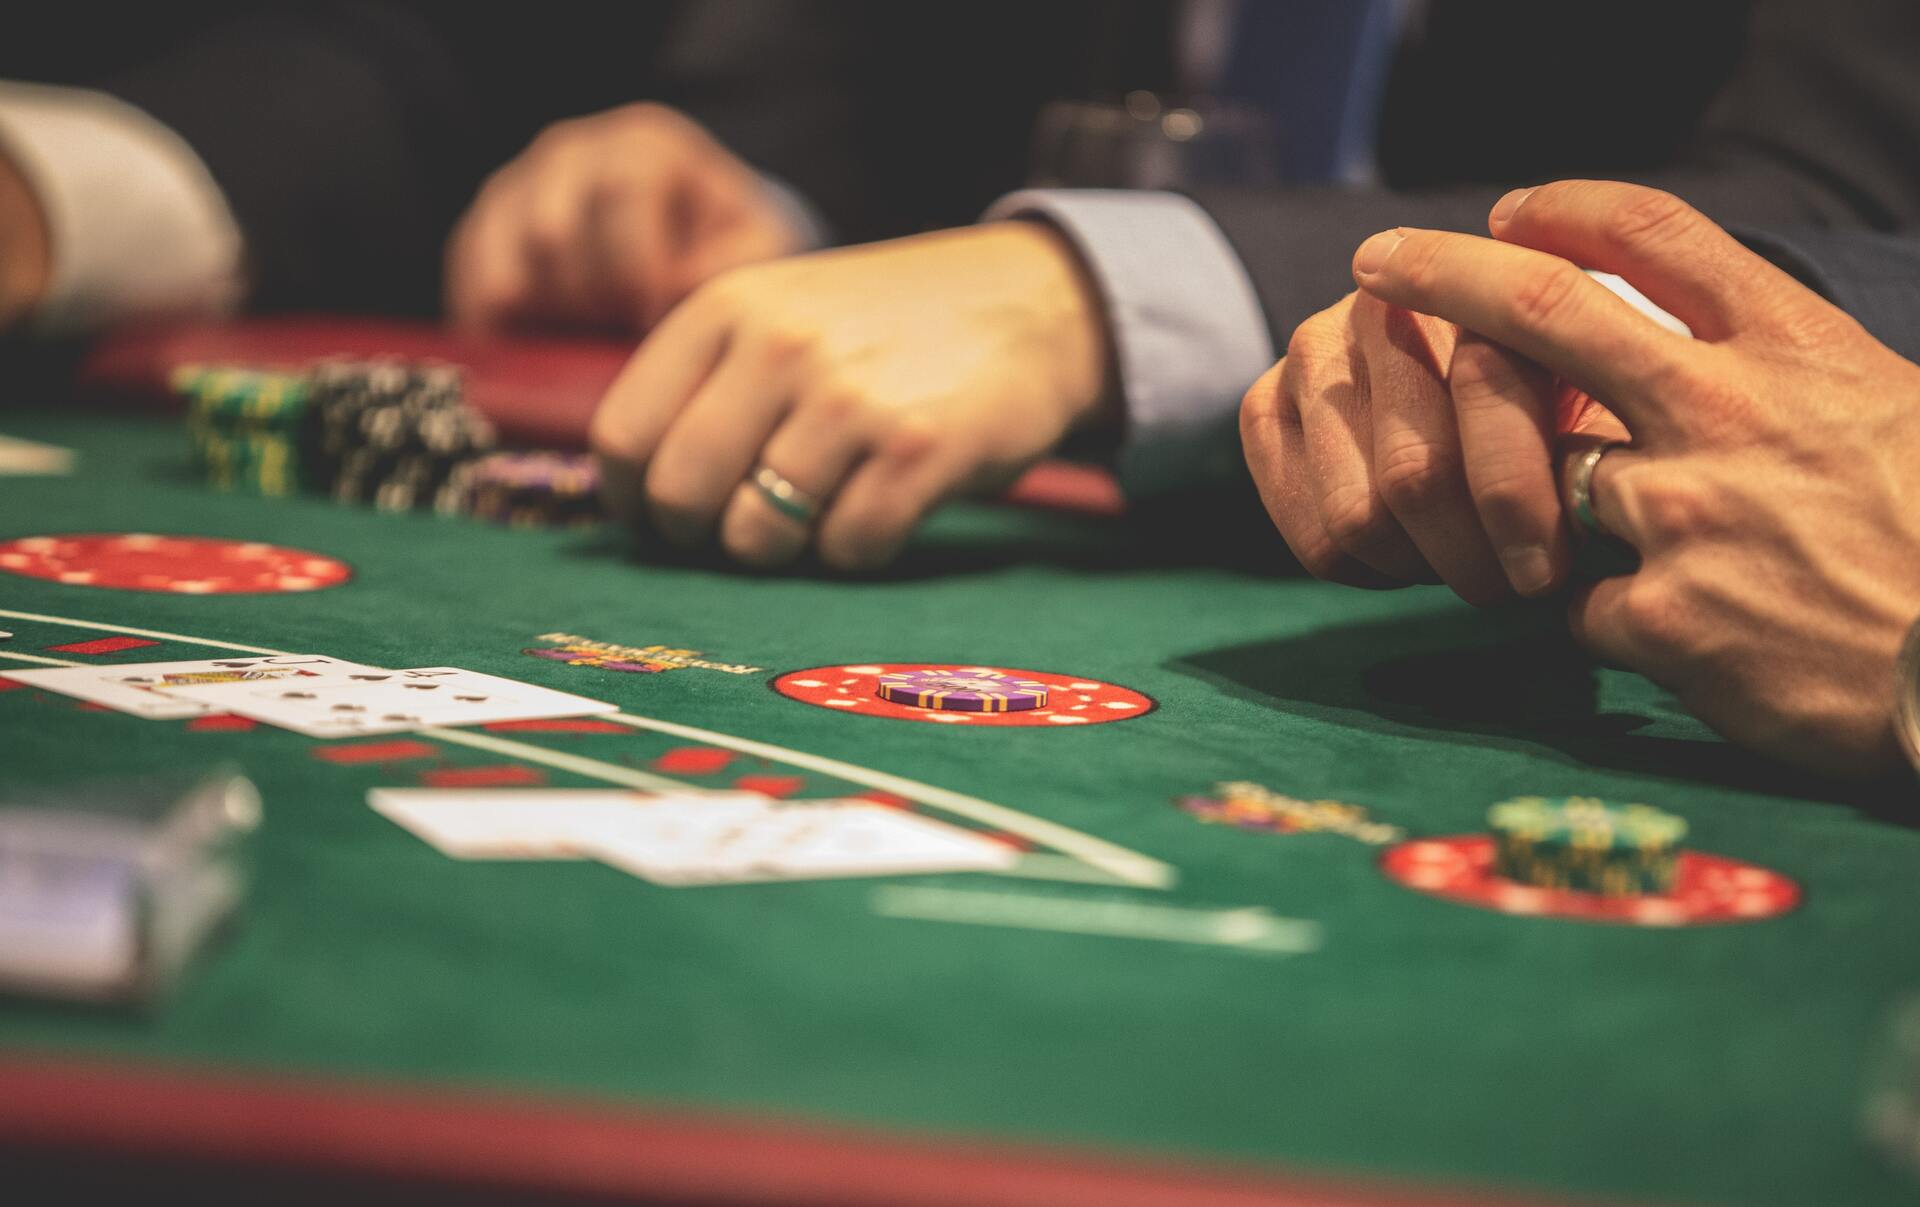  Estos juegos ofrecen la posibilidad de participar en mesas reales con crupieres en vivo, creando una experiencia de casino auténtica y envolvente. 